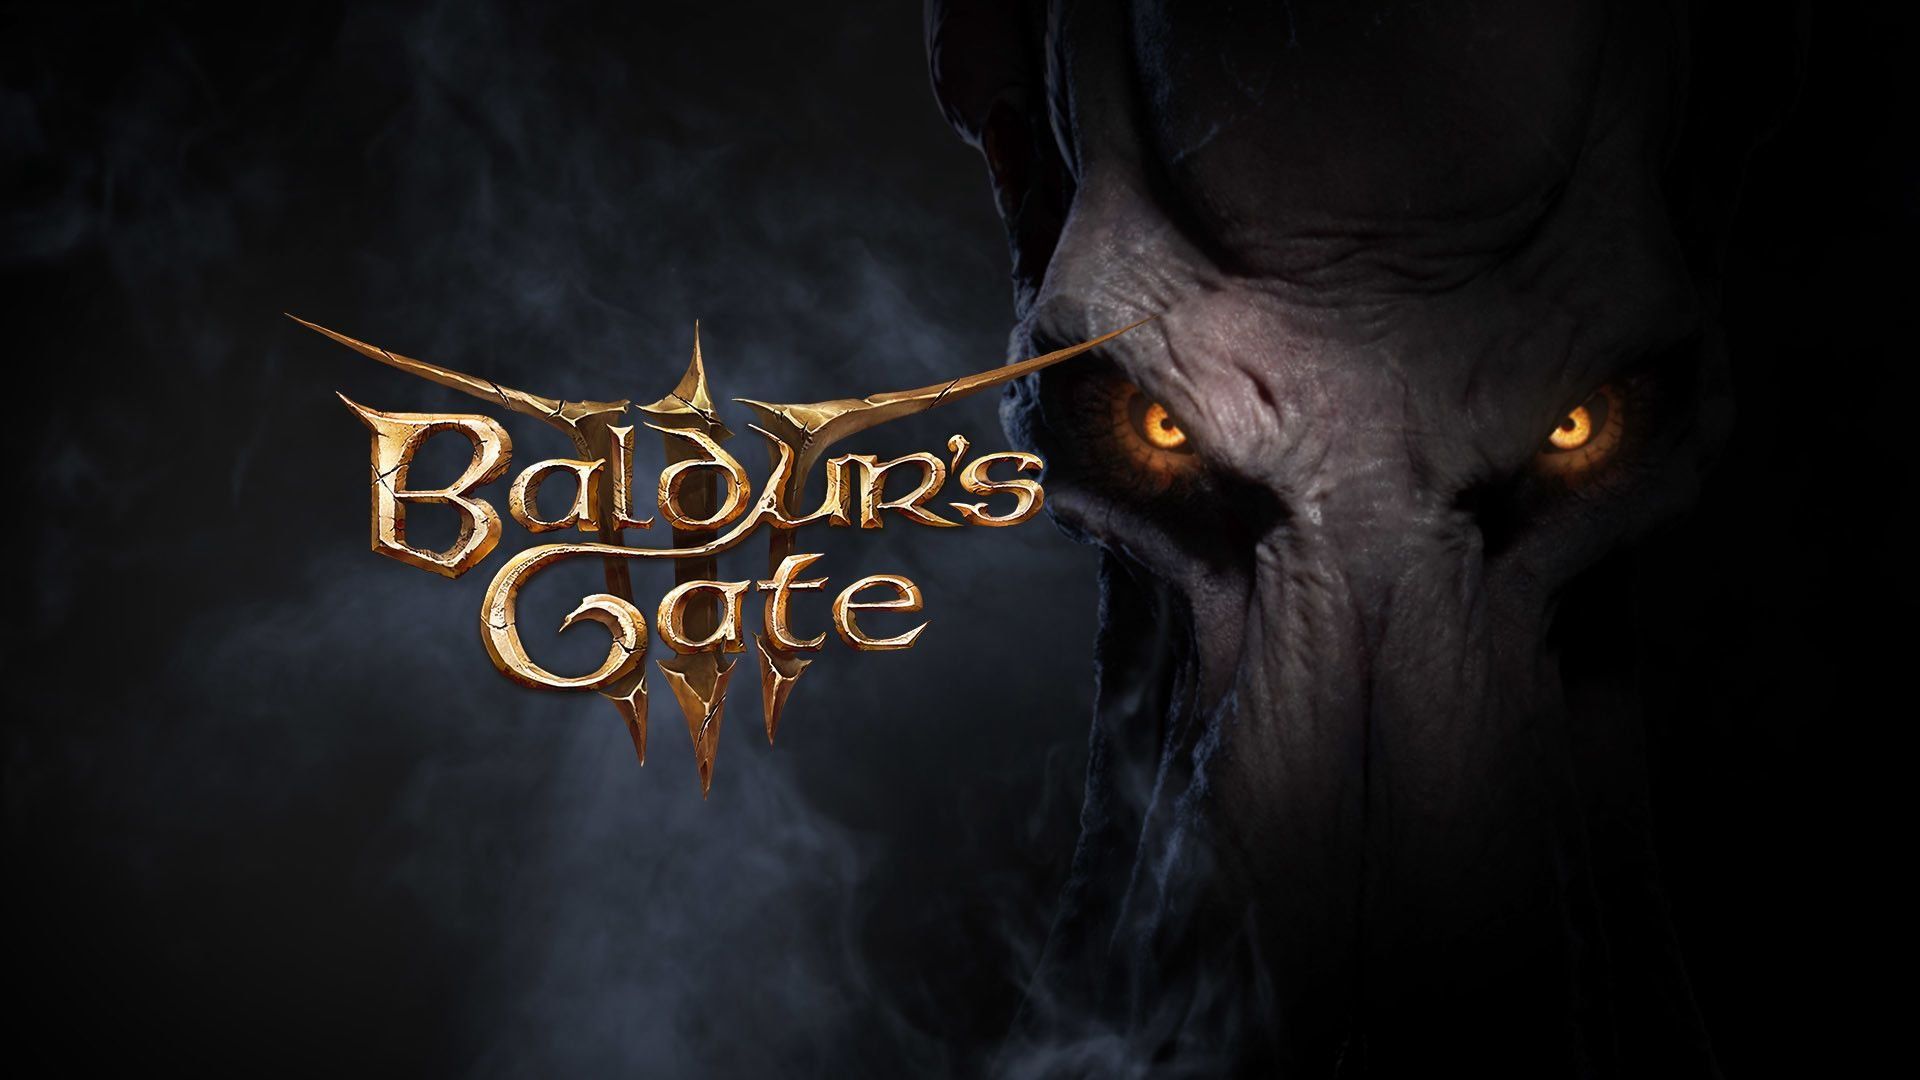 Ce personnage de Baldur's Gate 3 révèle l'un des secrets des Elfes noirs dans l'univers de Donjons et Dragons